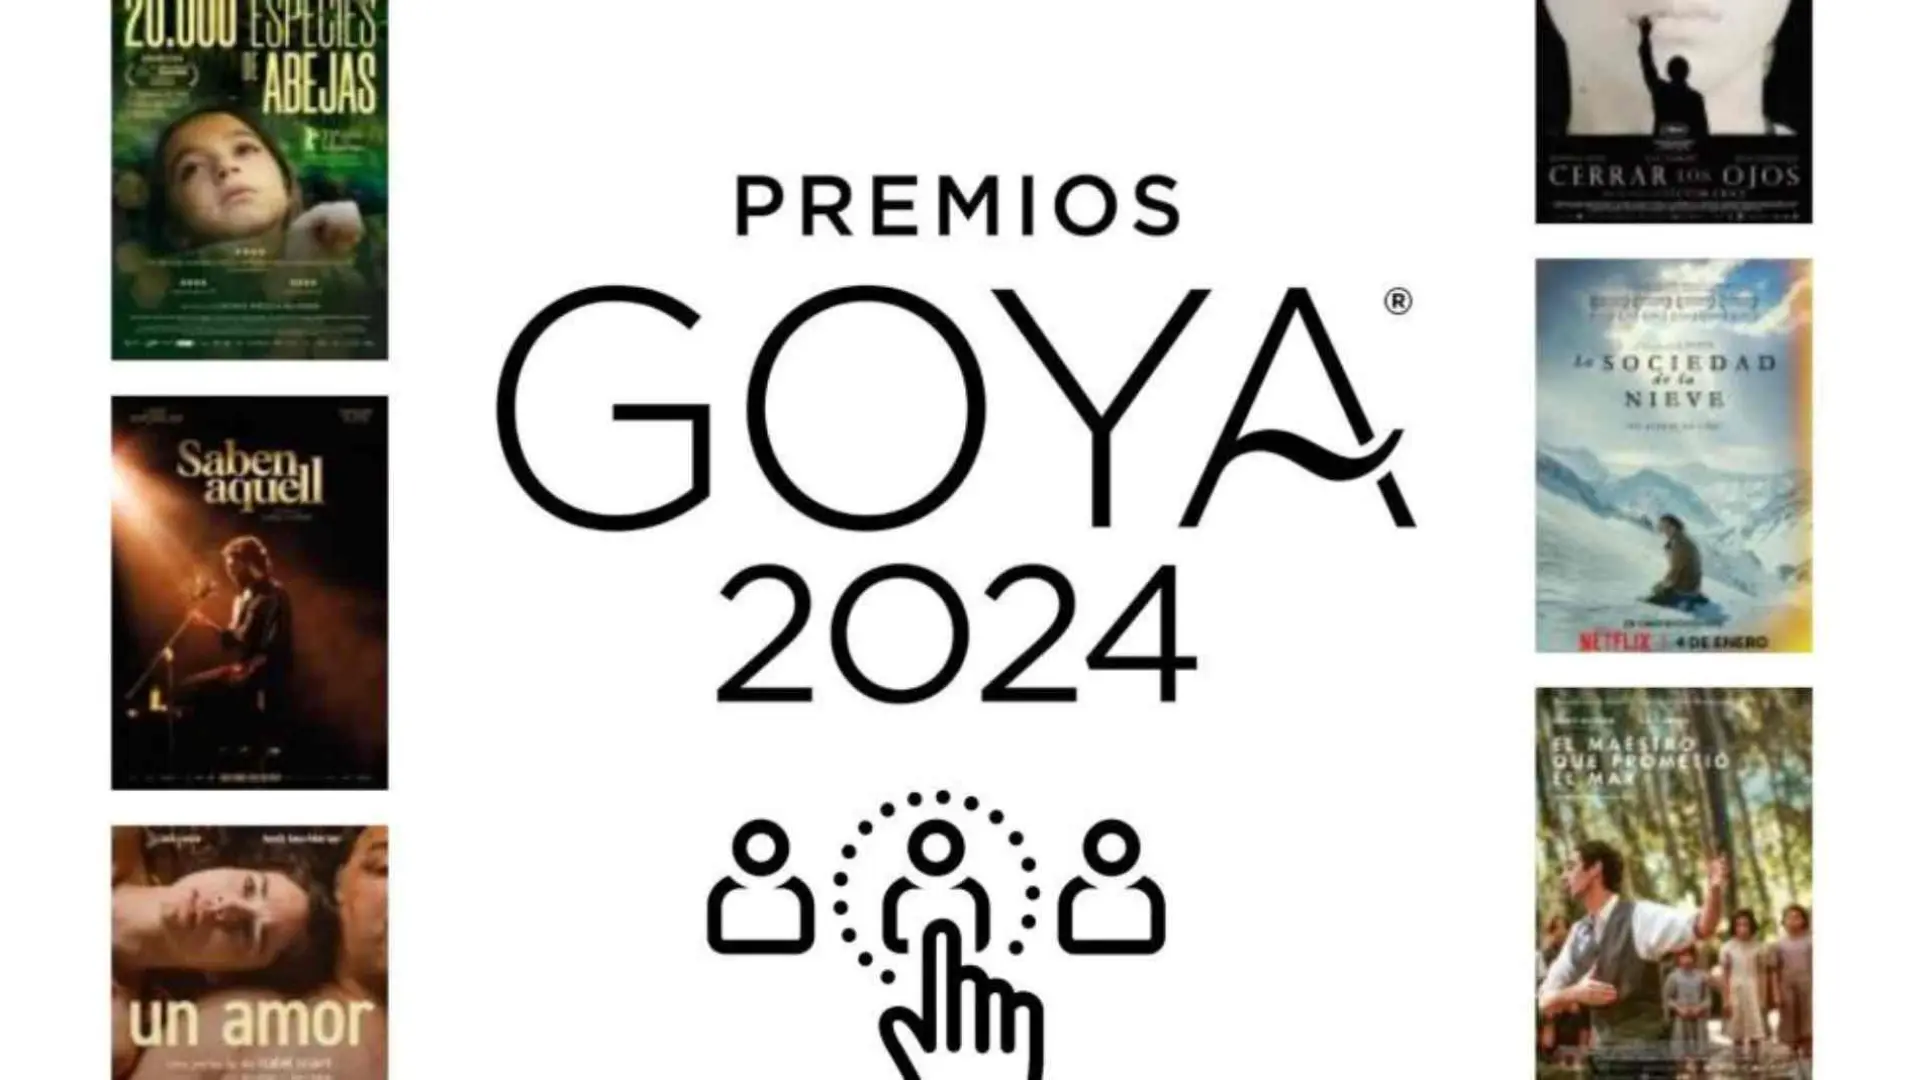 Una noche con Adela » Premios Goya 2024